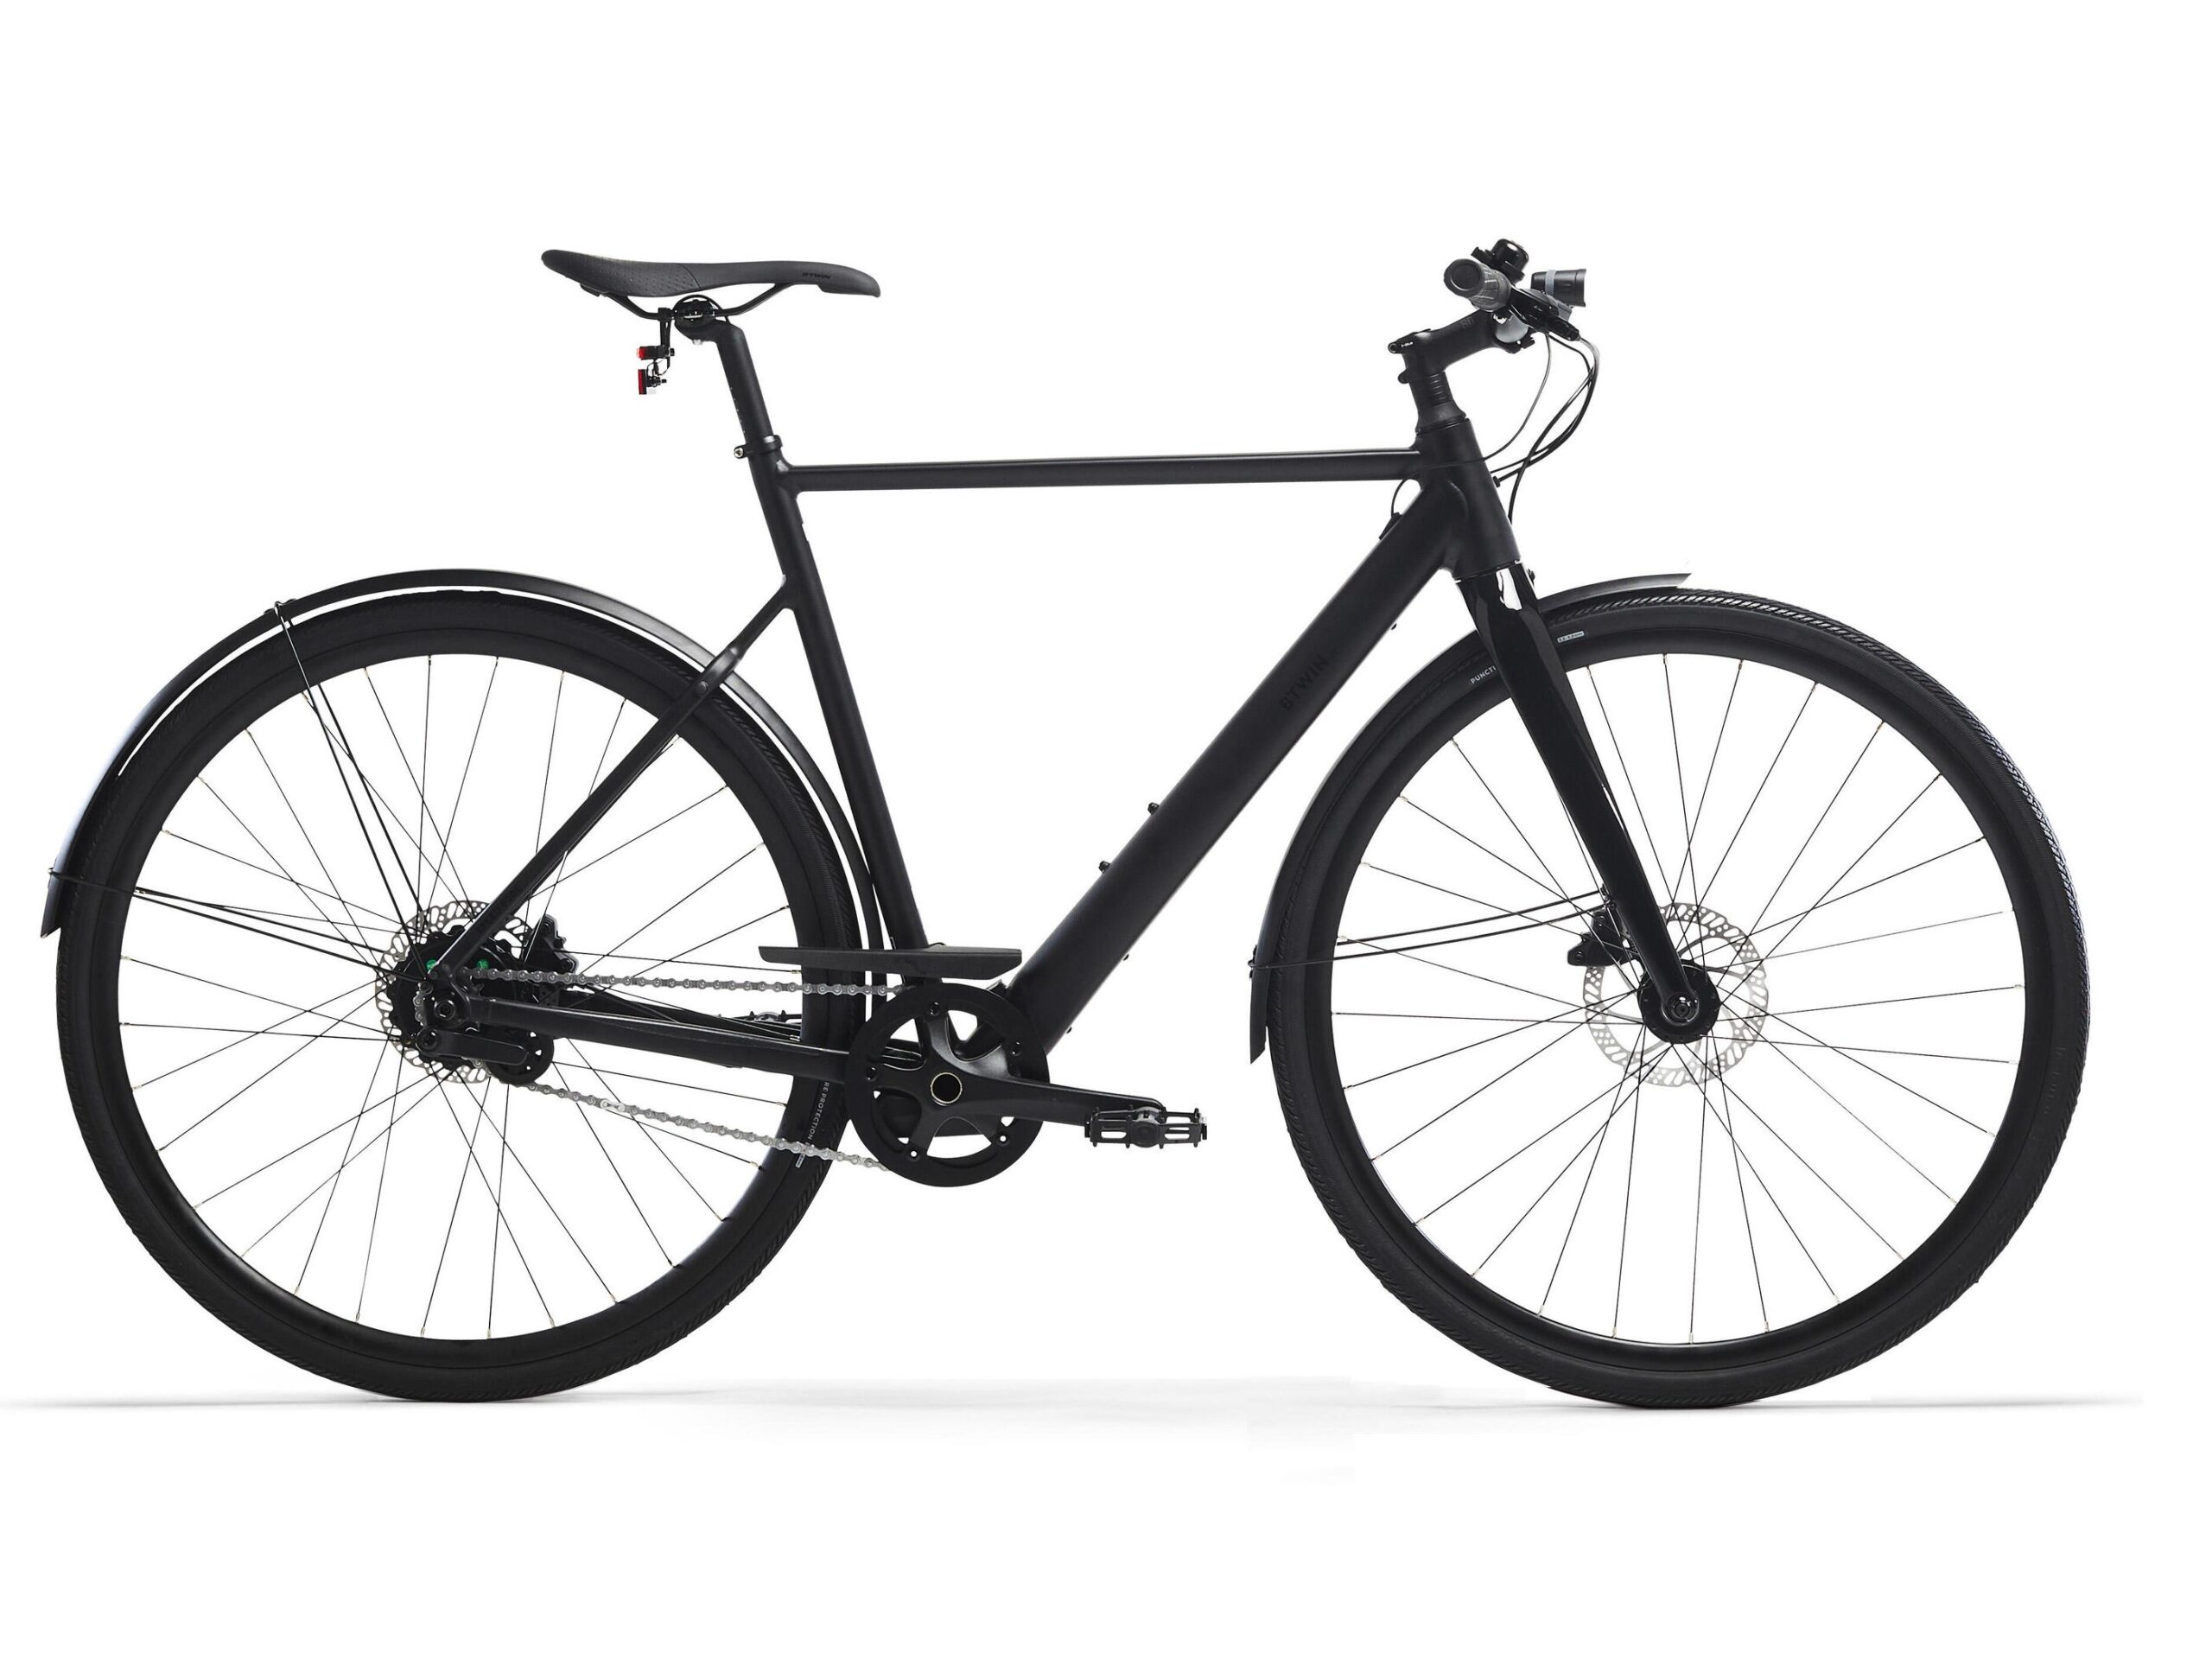 Decathlon: Neues, leichtes und schickes E-Bike ist ab sofort mit Carbongabel, GPS-Ortung und Mahle-Motor erhältlich